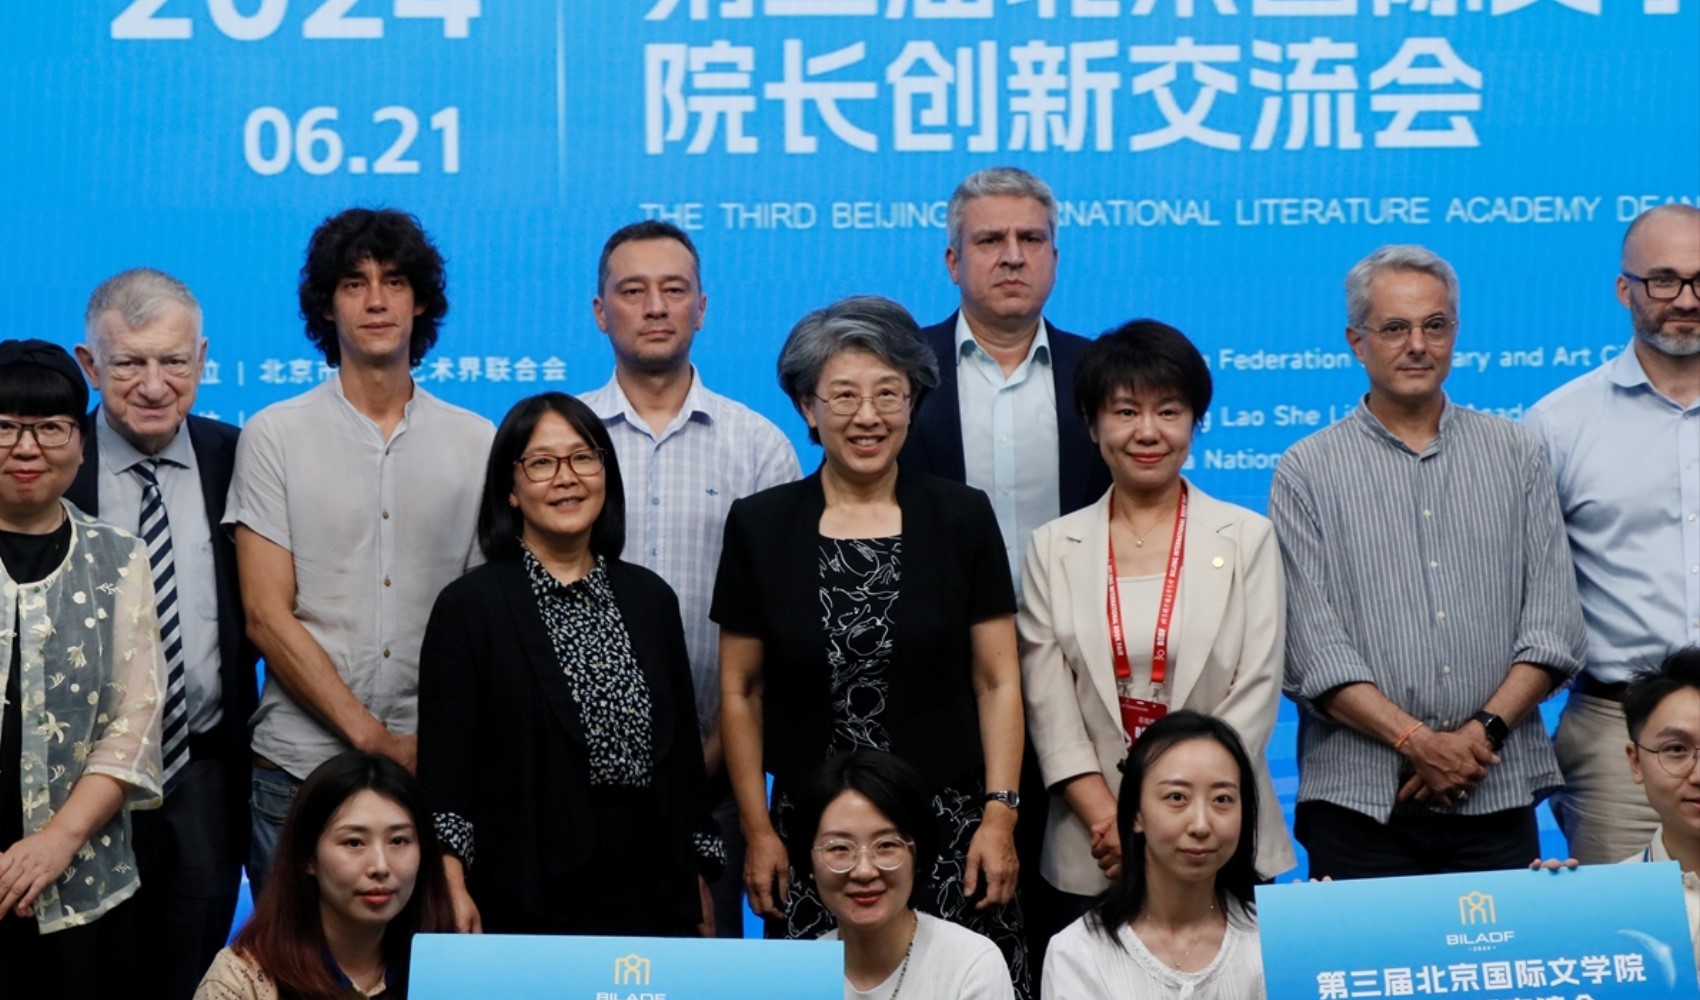 Pekin Büyükelçisi Musa'dan Çin ile akademik ve kültürel işbirliği çağrısı